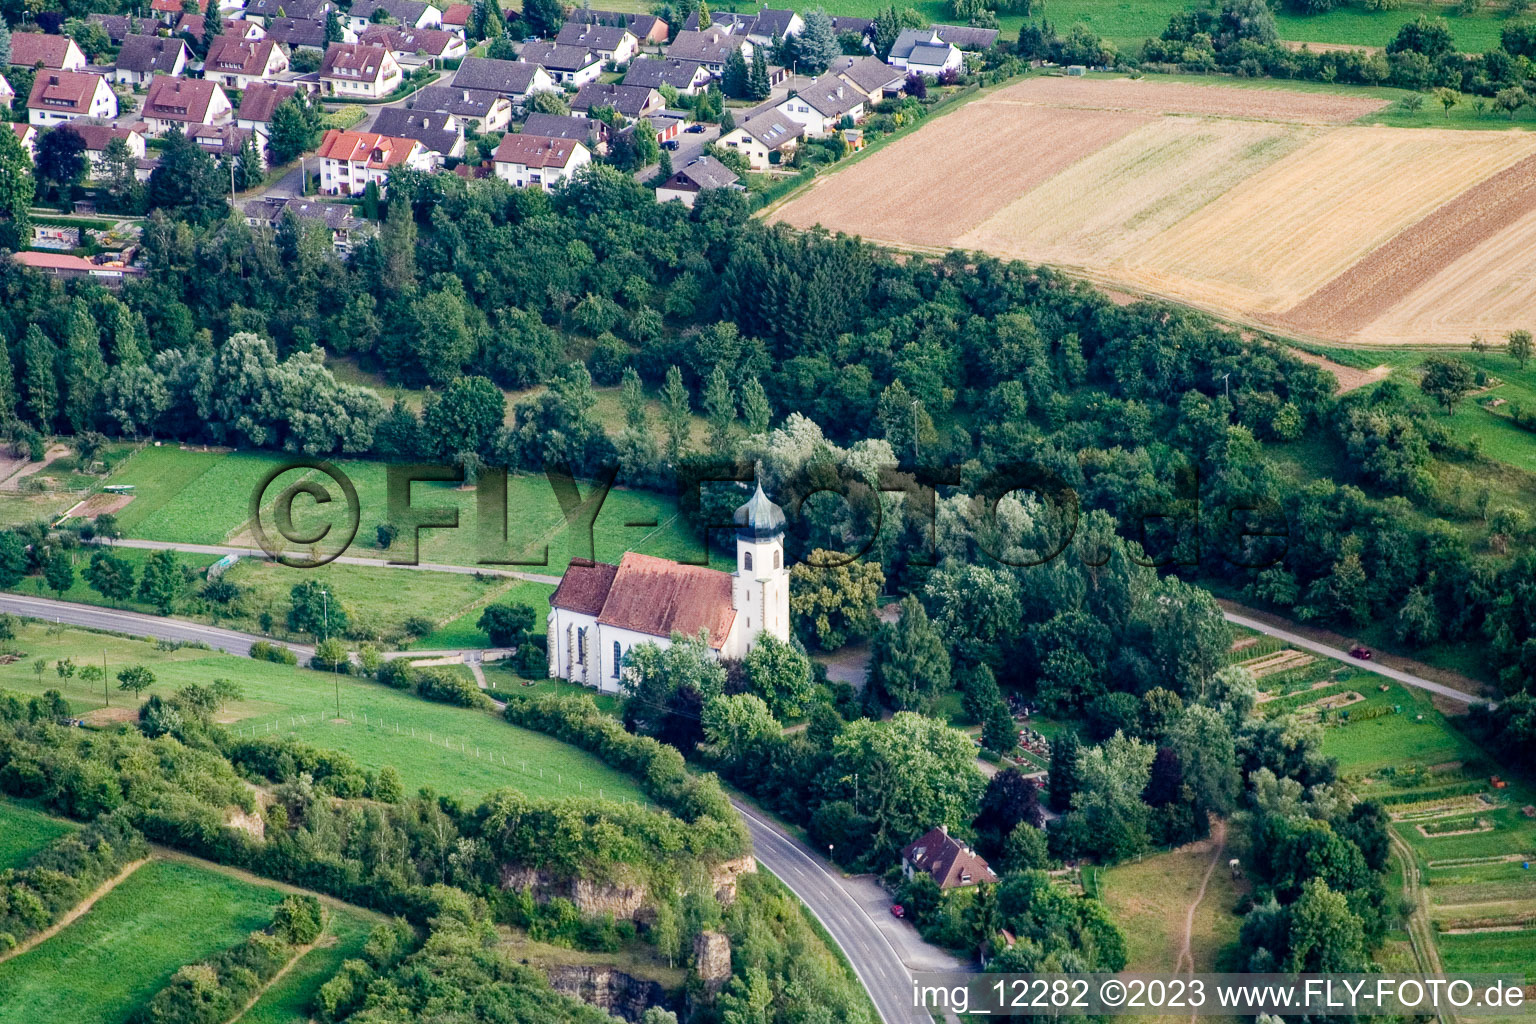 Vue aérienne de Chapelle de Poltringen à Ammerbuch dans le département Bade-Wurtemberg, Allemagne